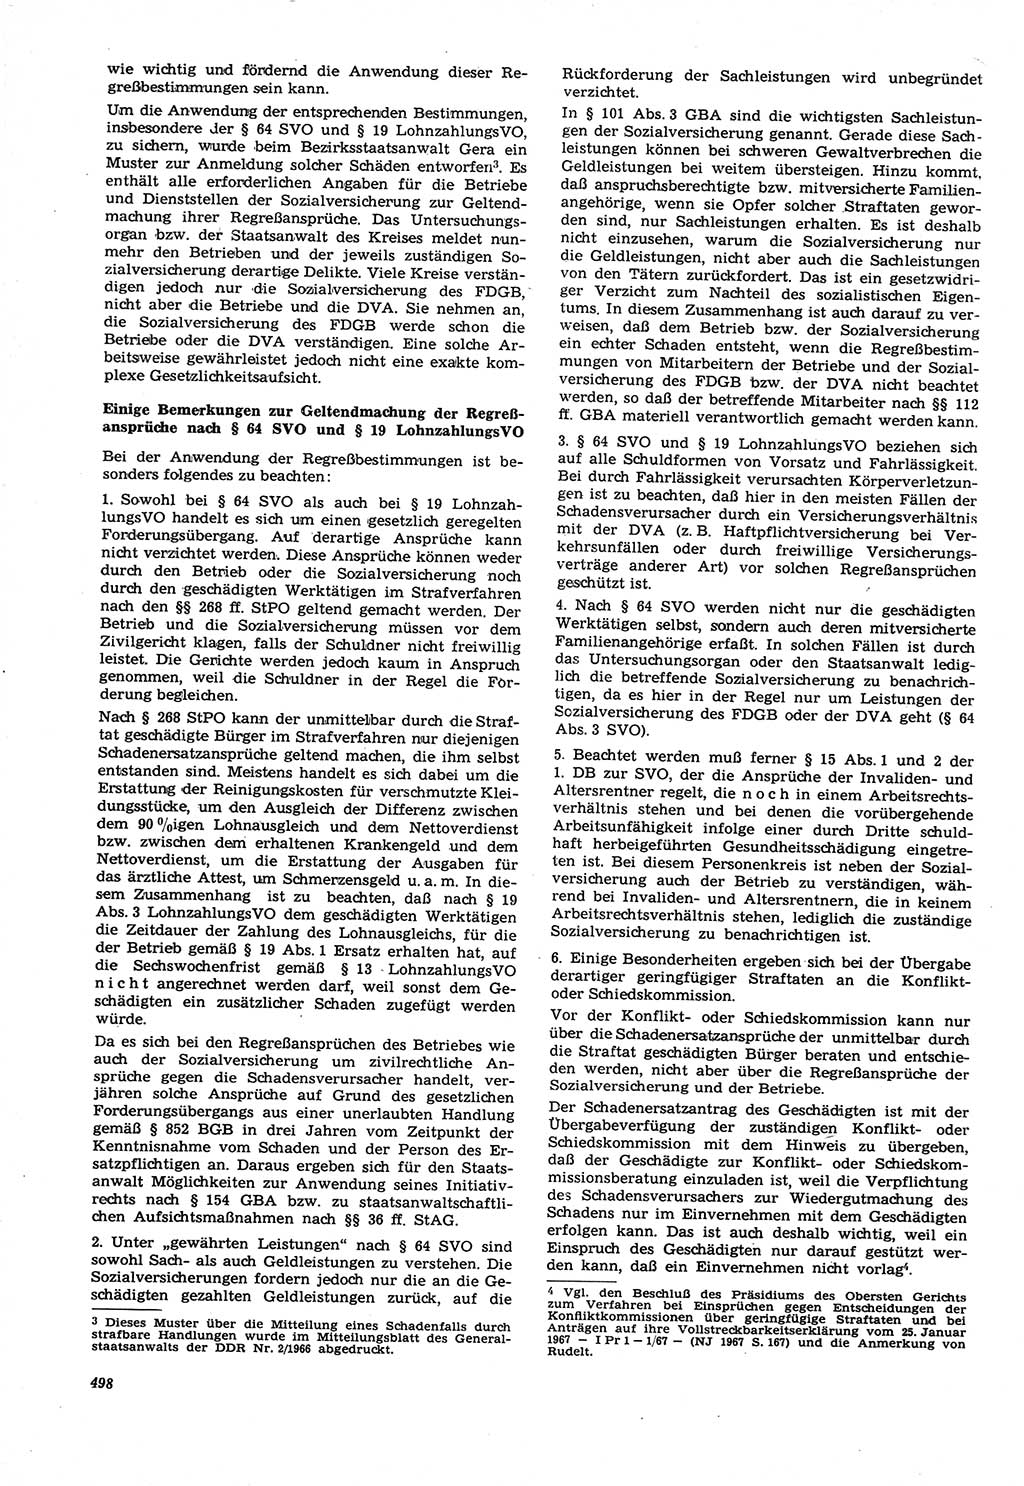 Neue Justiz (NJ), Zeitschrift für Recht und Rechtswissenschaft [Deutsche Demokratische Republik (DDR)], 21. Jahrgang 1967, Seite 498 (NJ DDR 1967, S. 498)